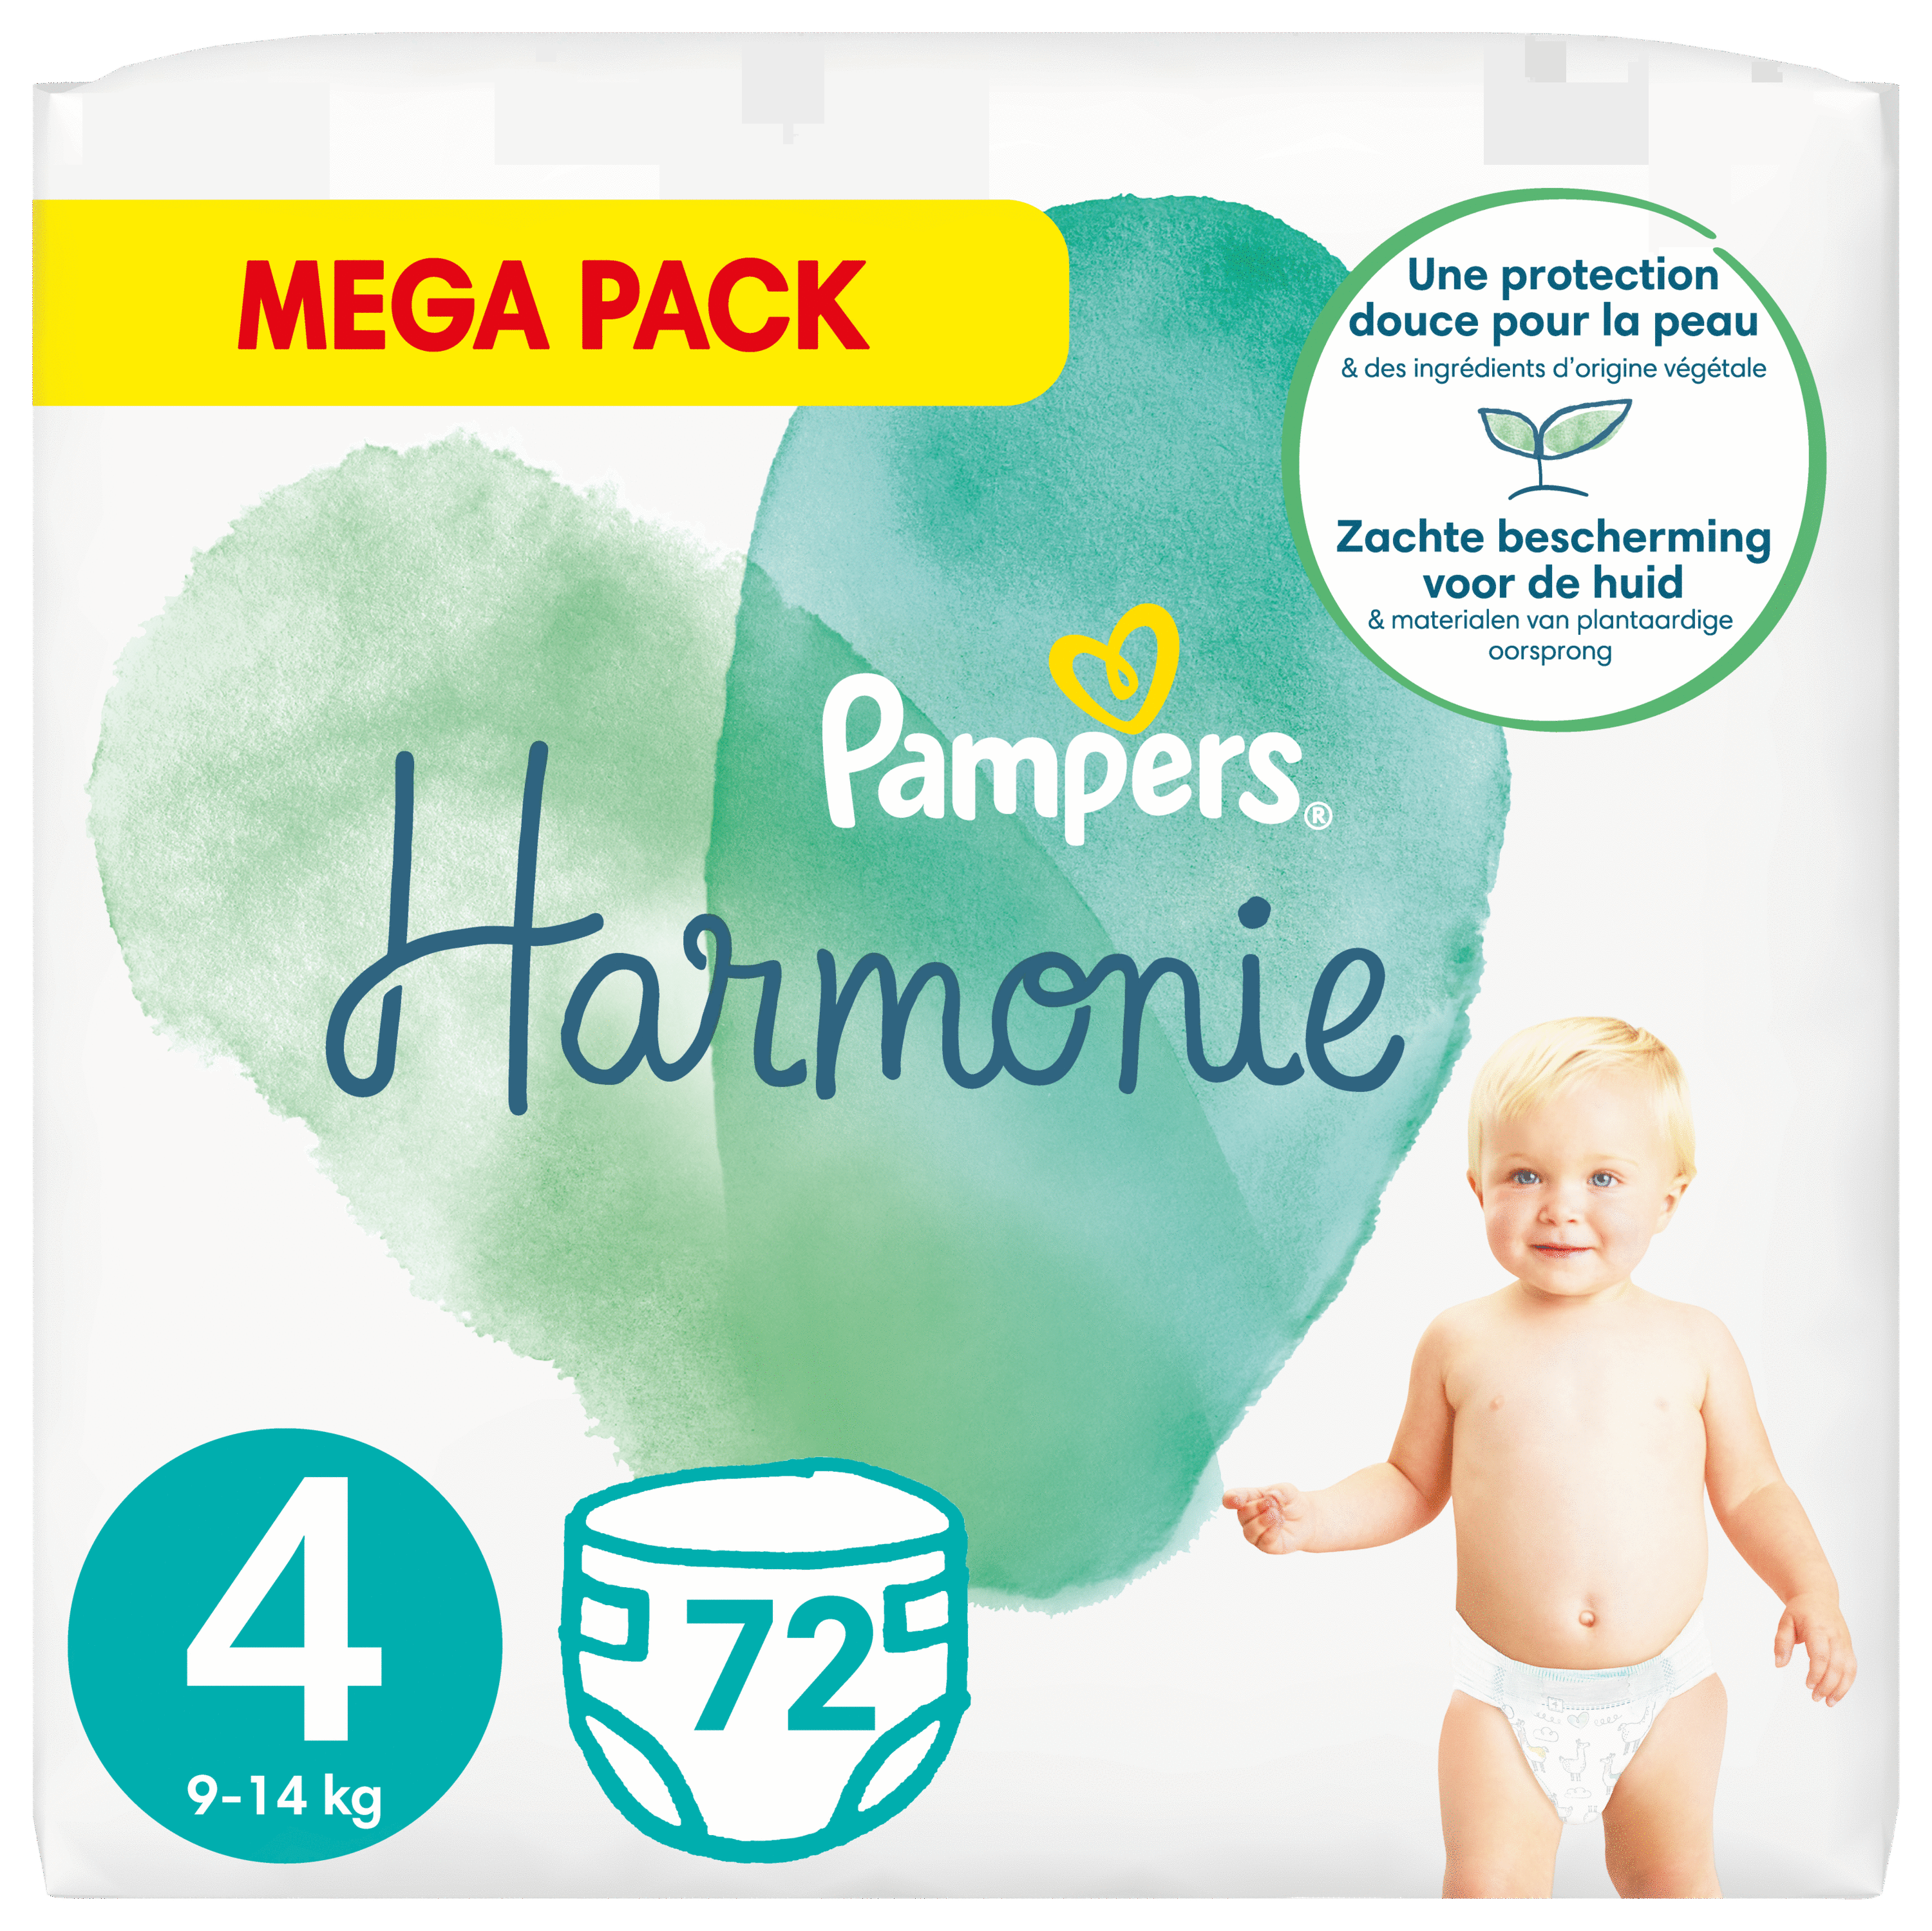 HARMONIE - Couches Mega Pack - Taille 4 - De 9 à 14kg, 72 Couches